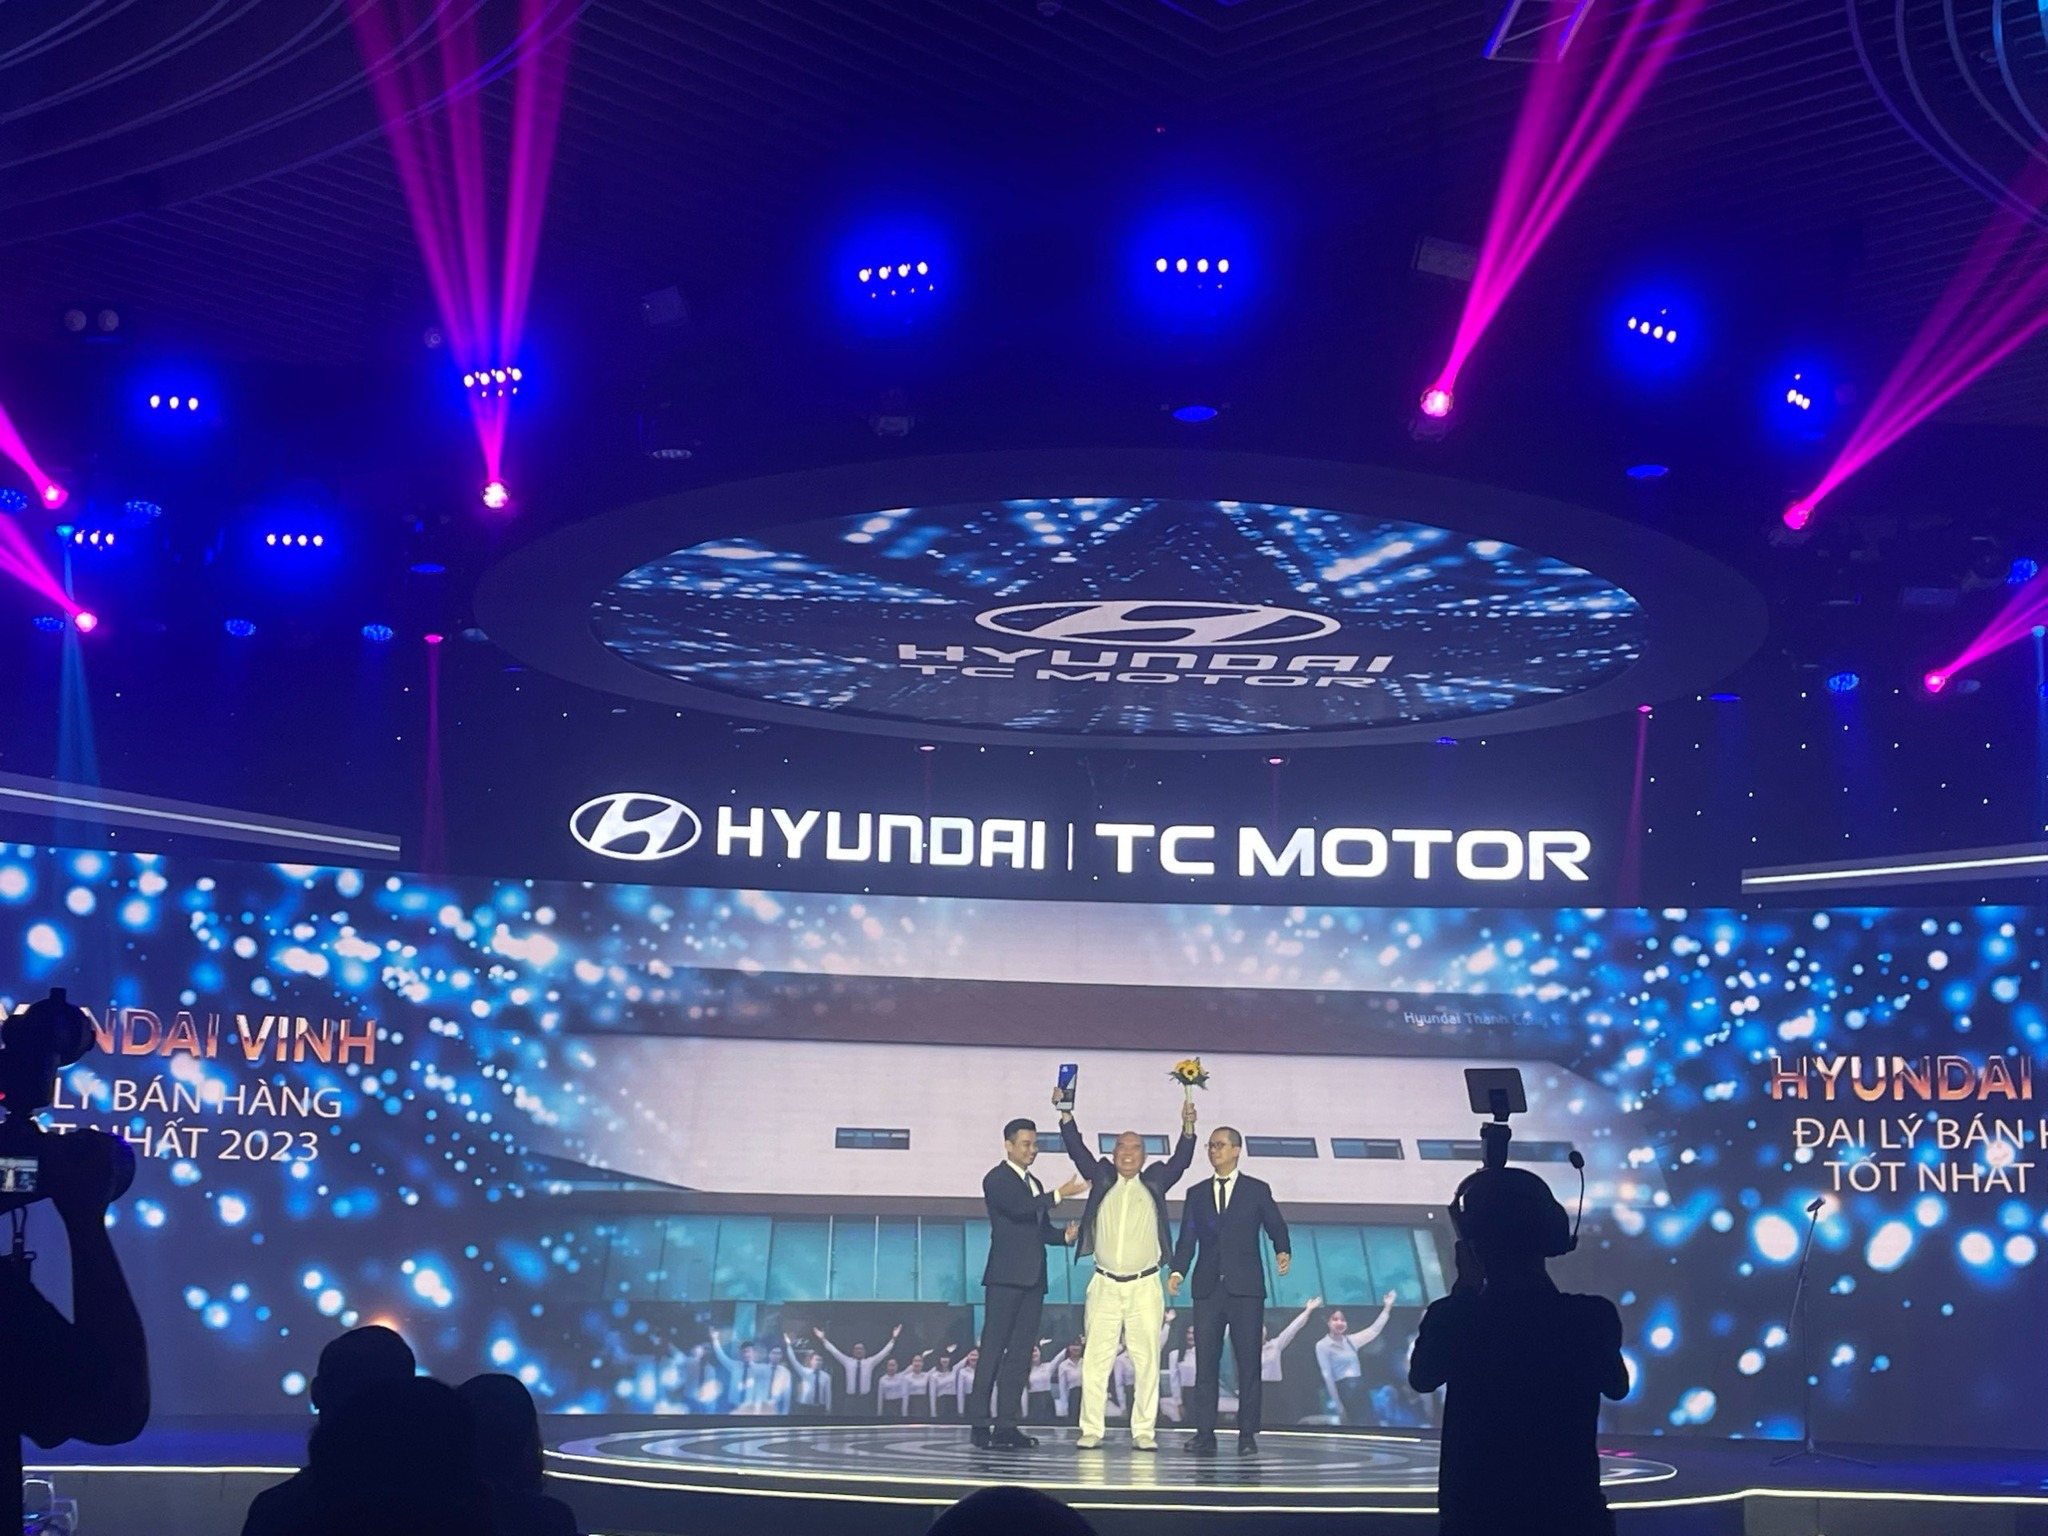 Chúc mừng Hyundai Vinh -  được VINH DANH XUẤT SẮC trong 79 đại lý trên toàn quốc